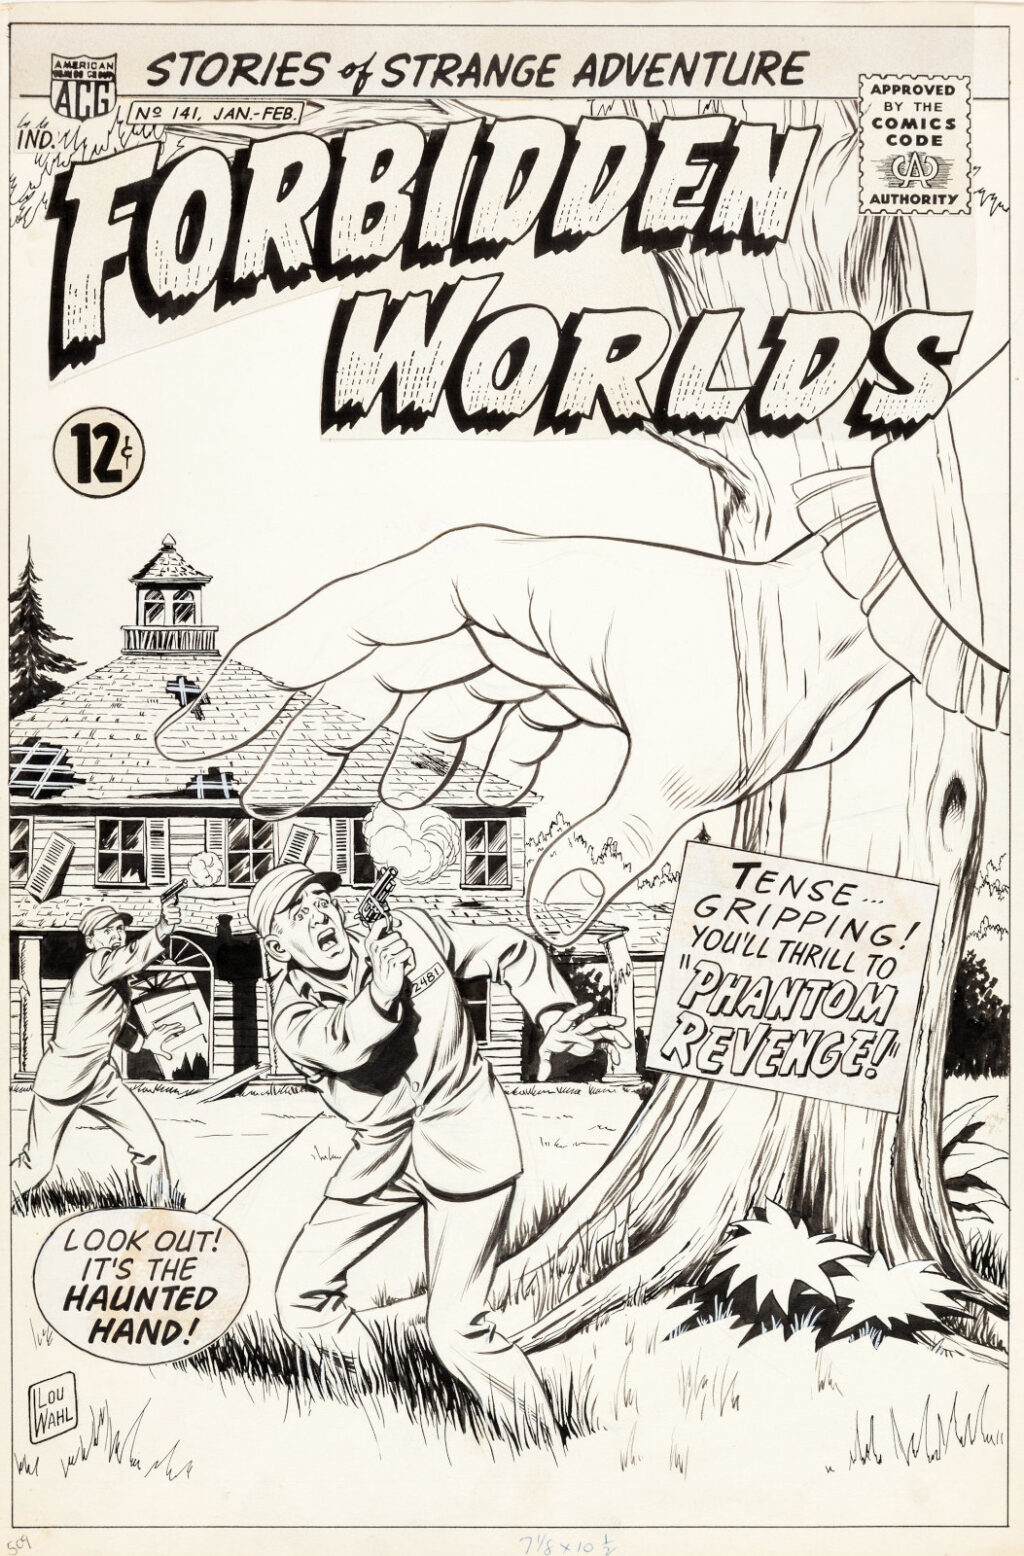 Forbidden Worlds issue 141 cover by Kurt Schaffenberger